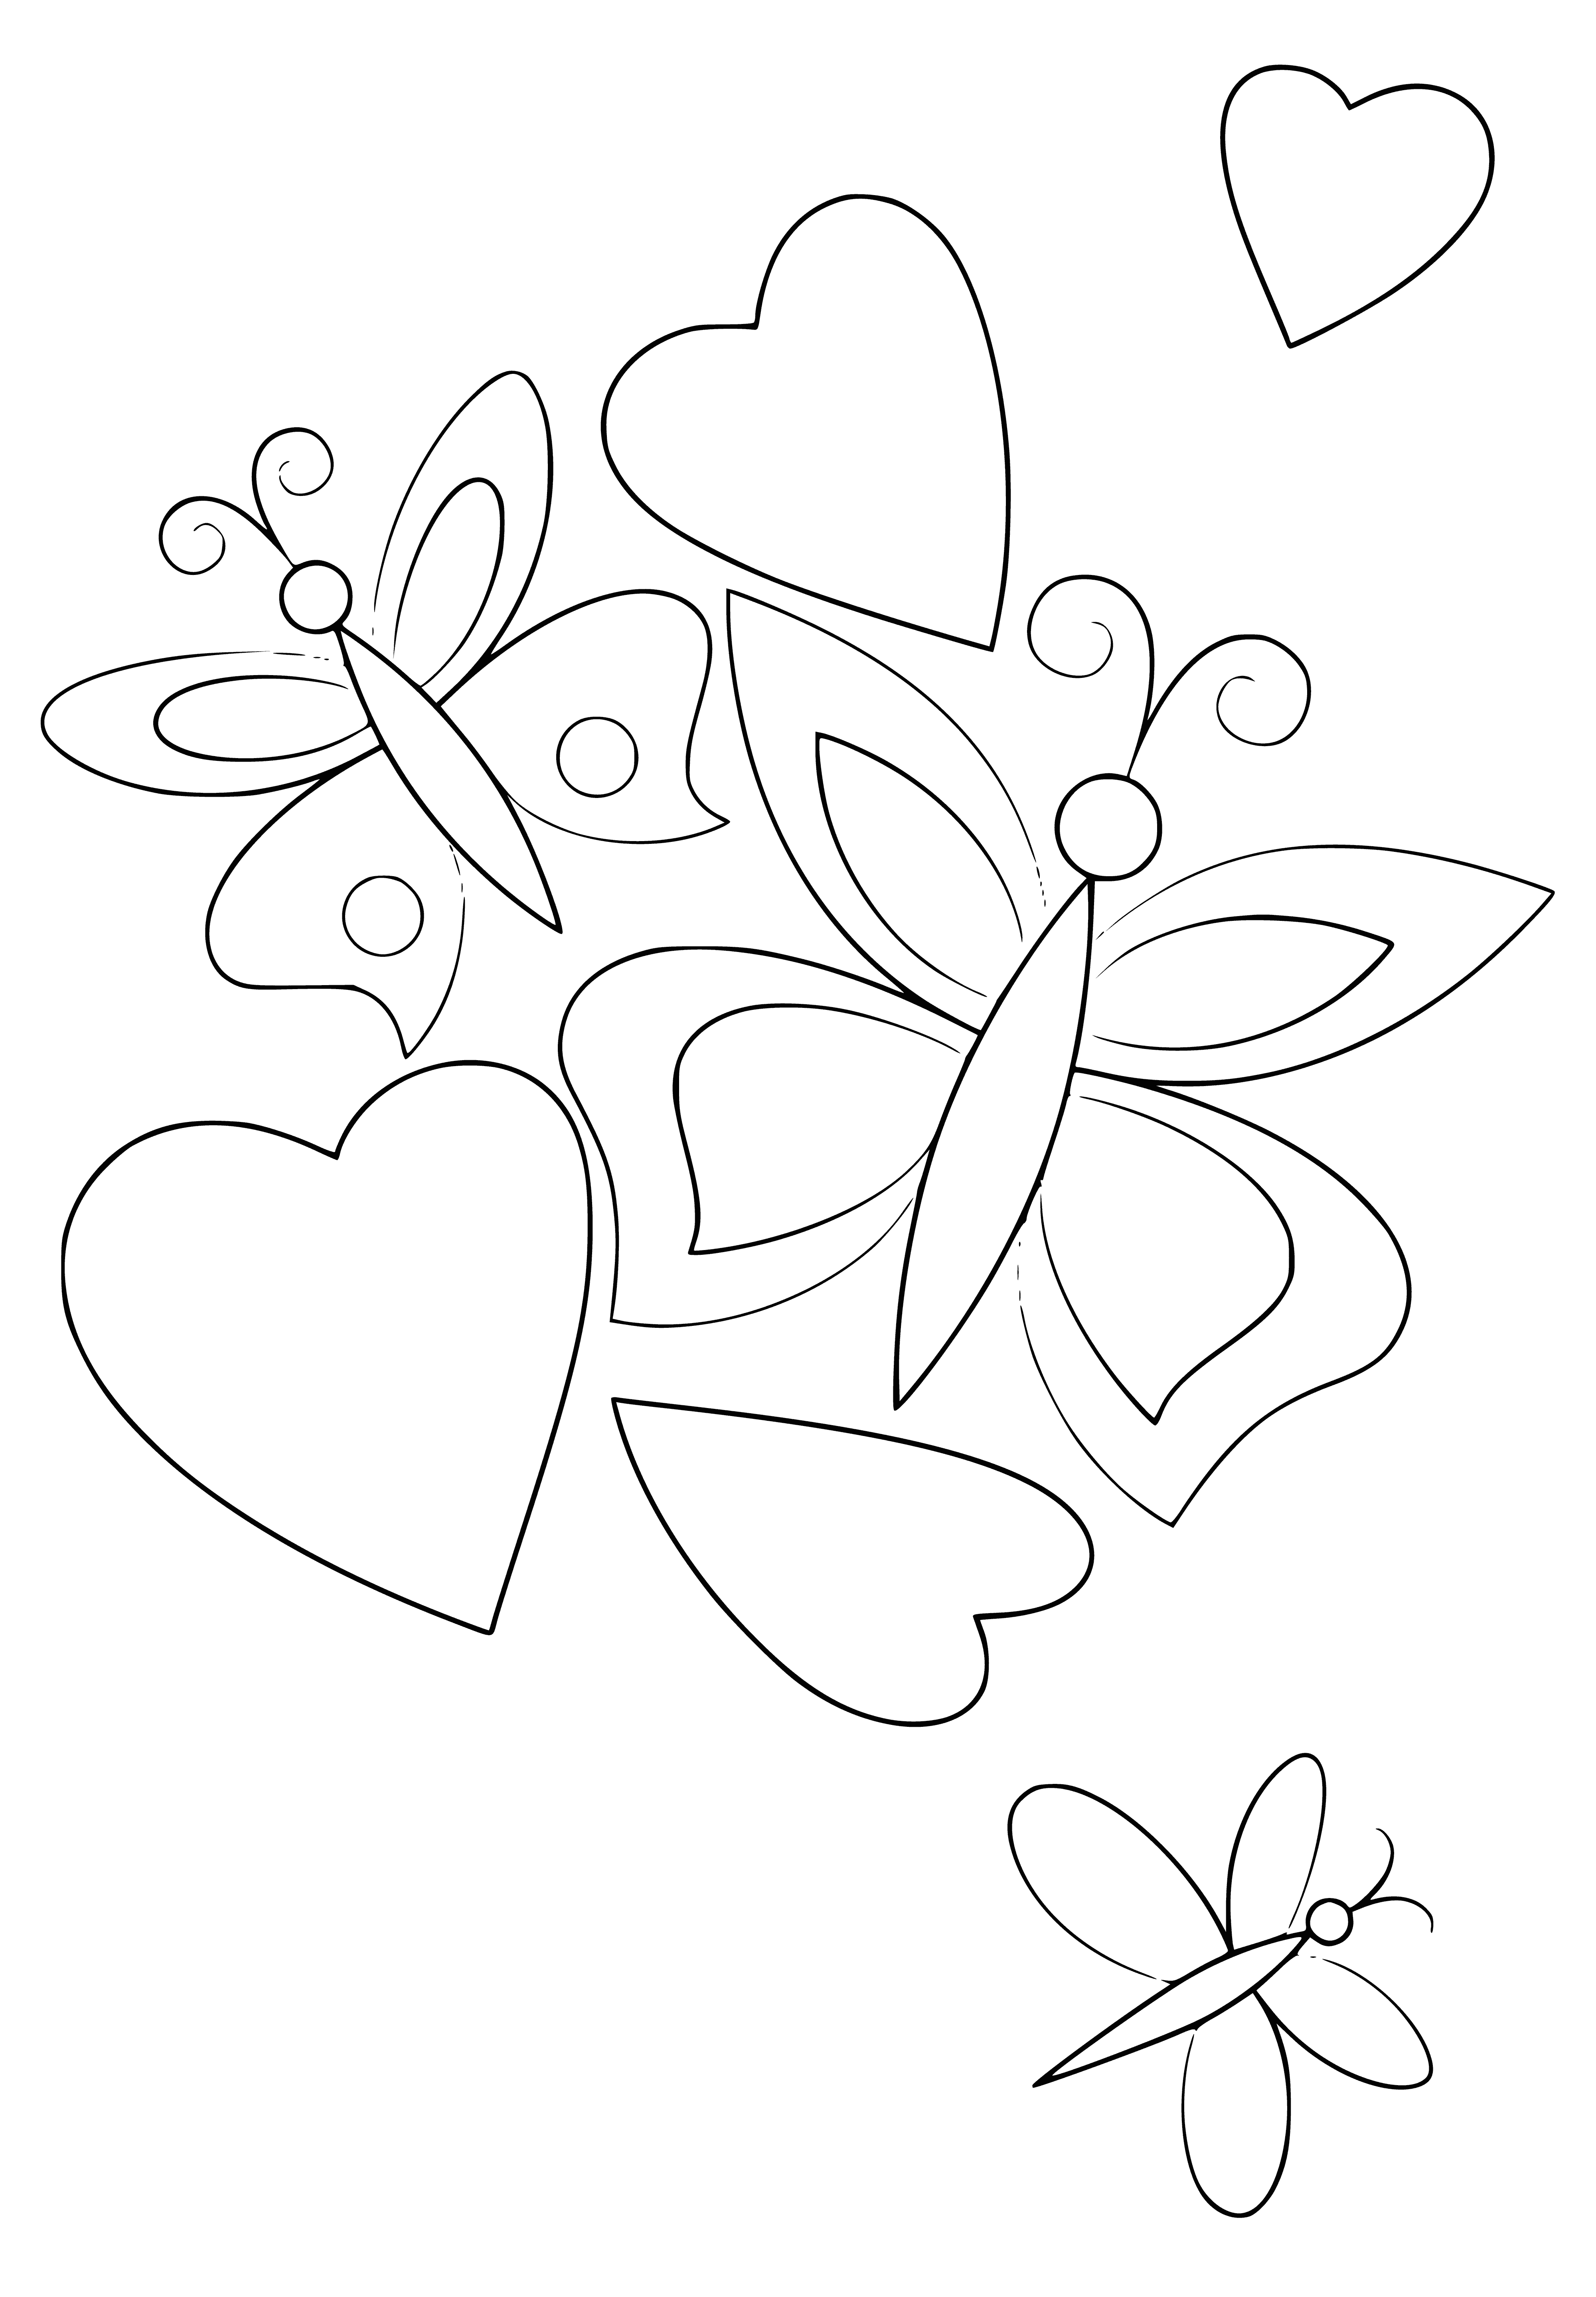 القلب والفراشات صفحة التلوين